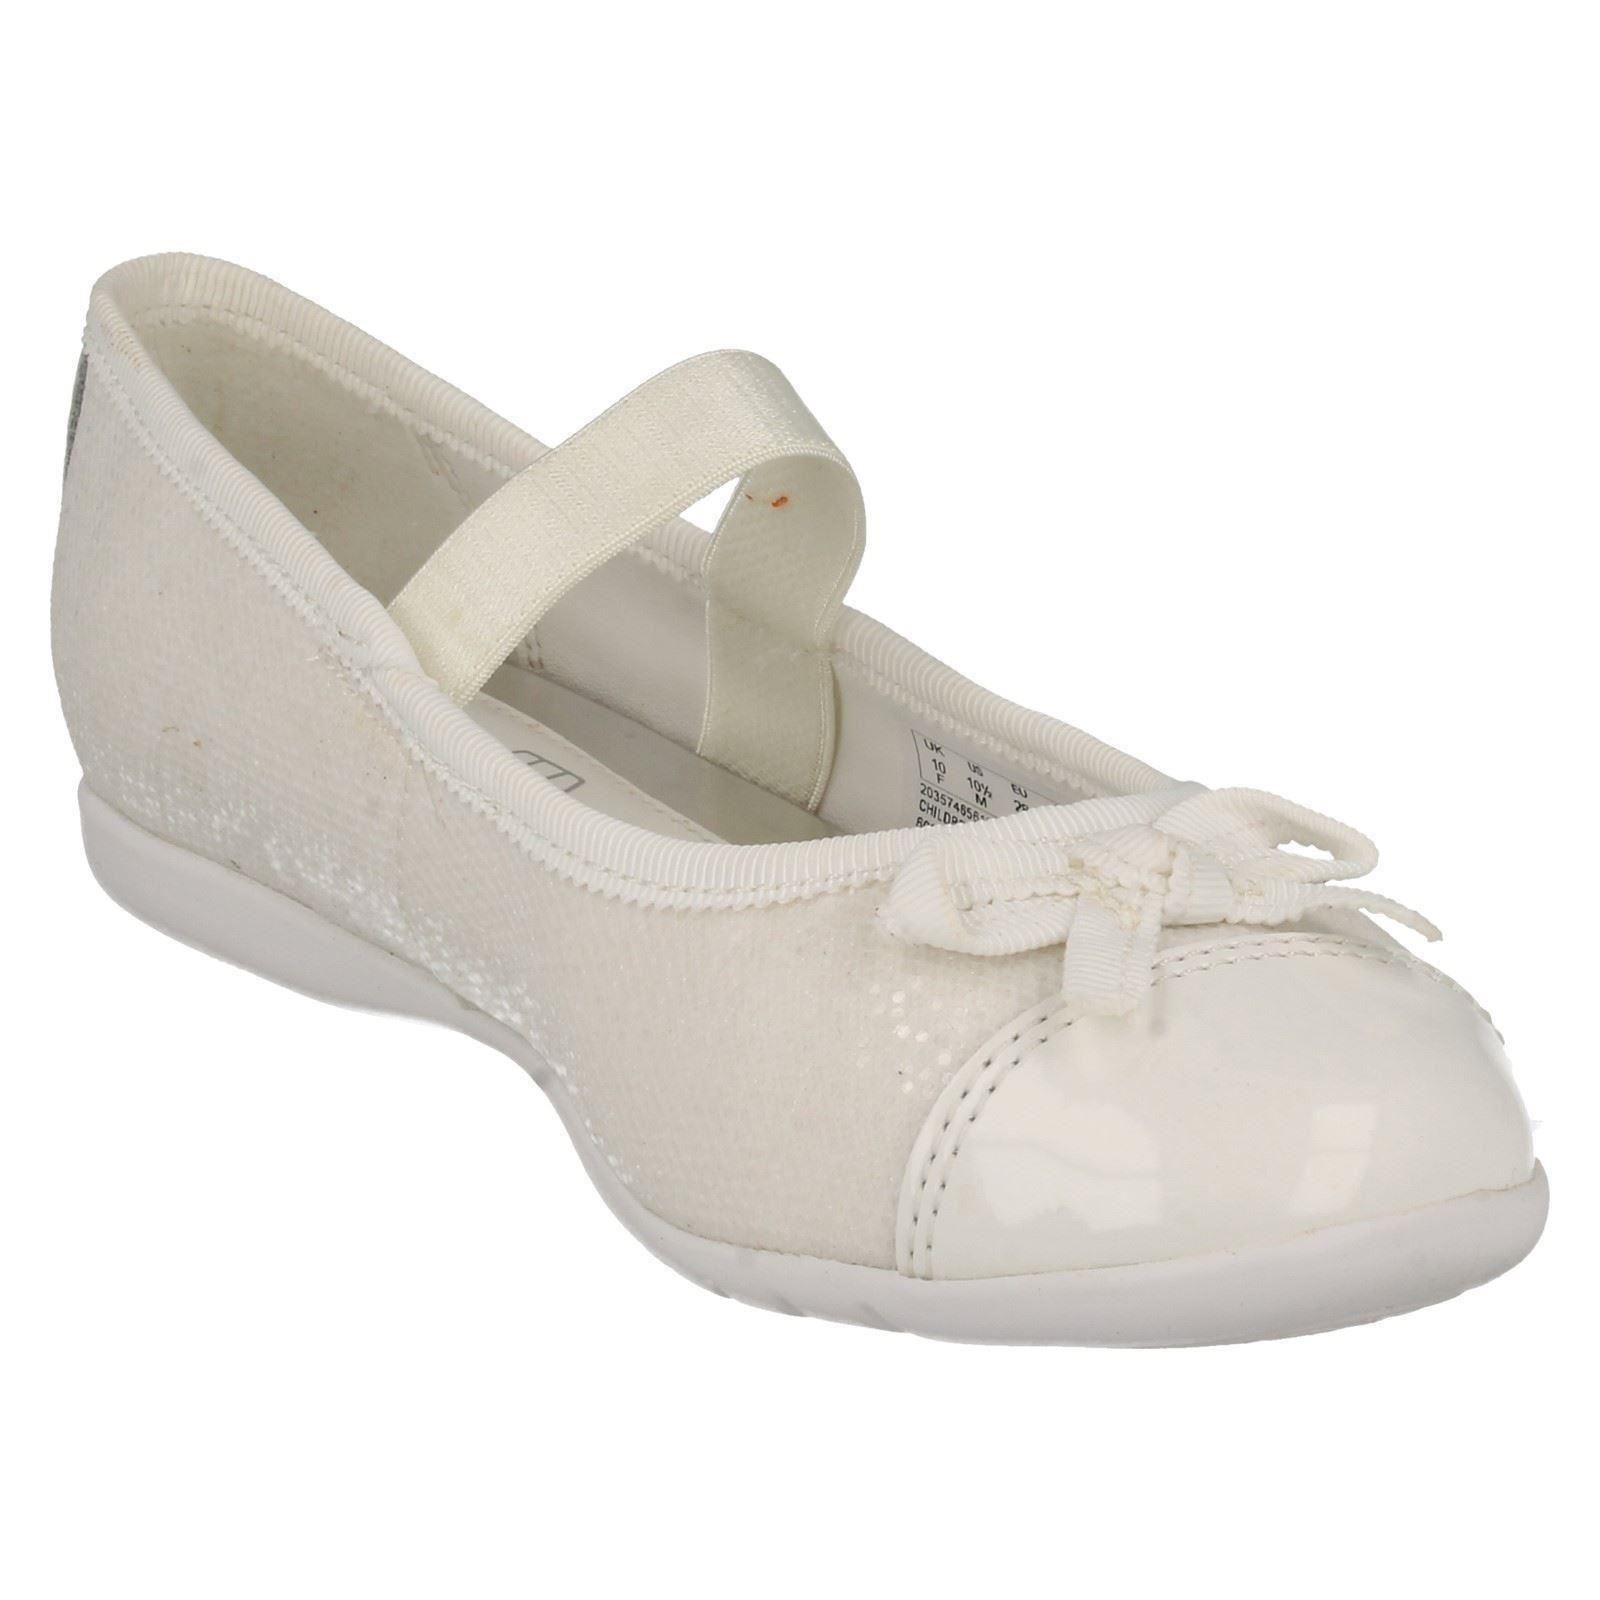 clarks communion shoes